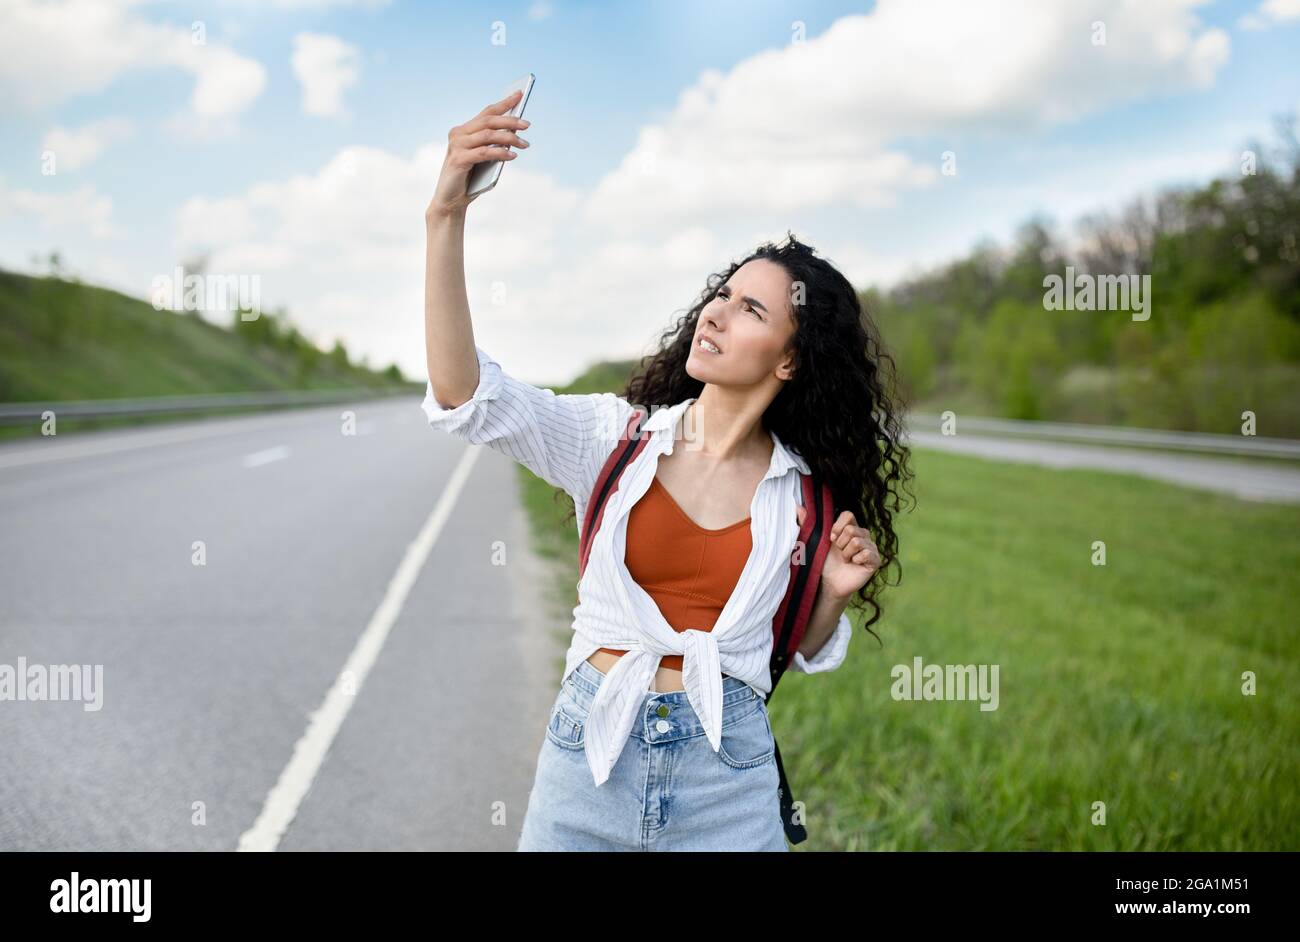 Verärgert junge Frau, die auf der Straße geht, die Hand mit dem Smartphone hebt, nach Signalen sucht, keine Verbindung hat, im Freien Stockfoto